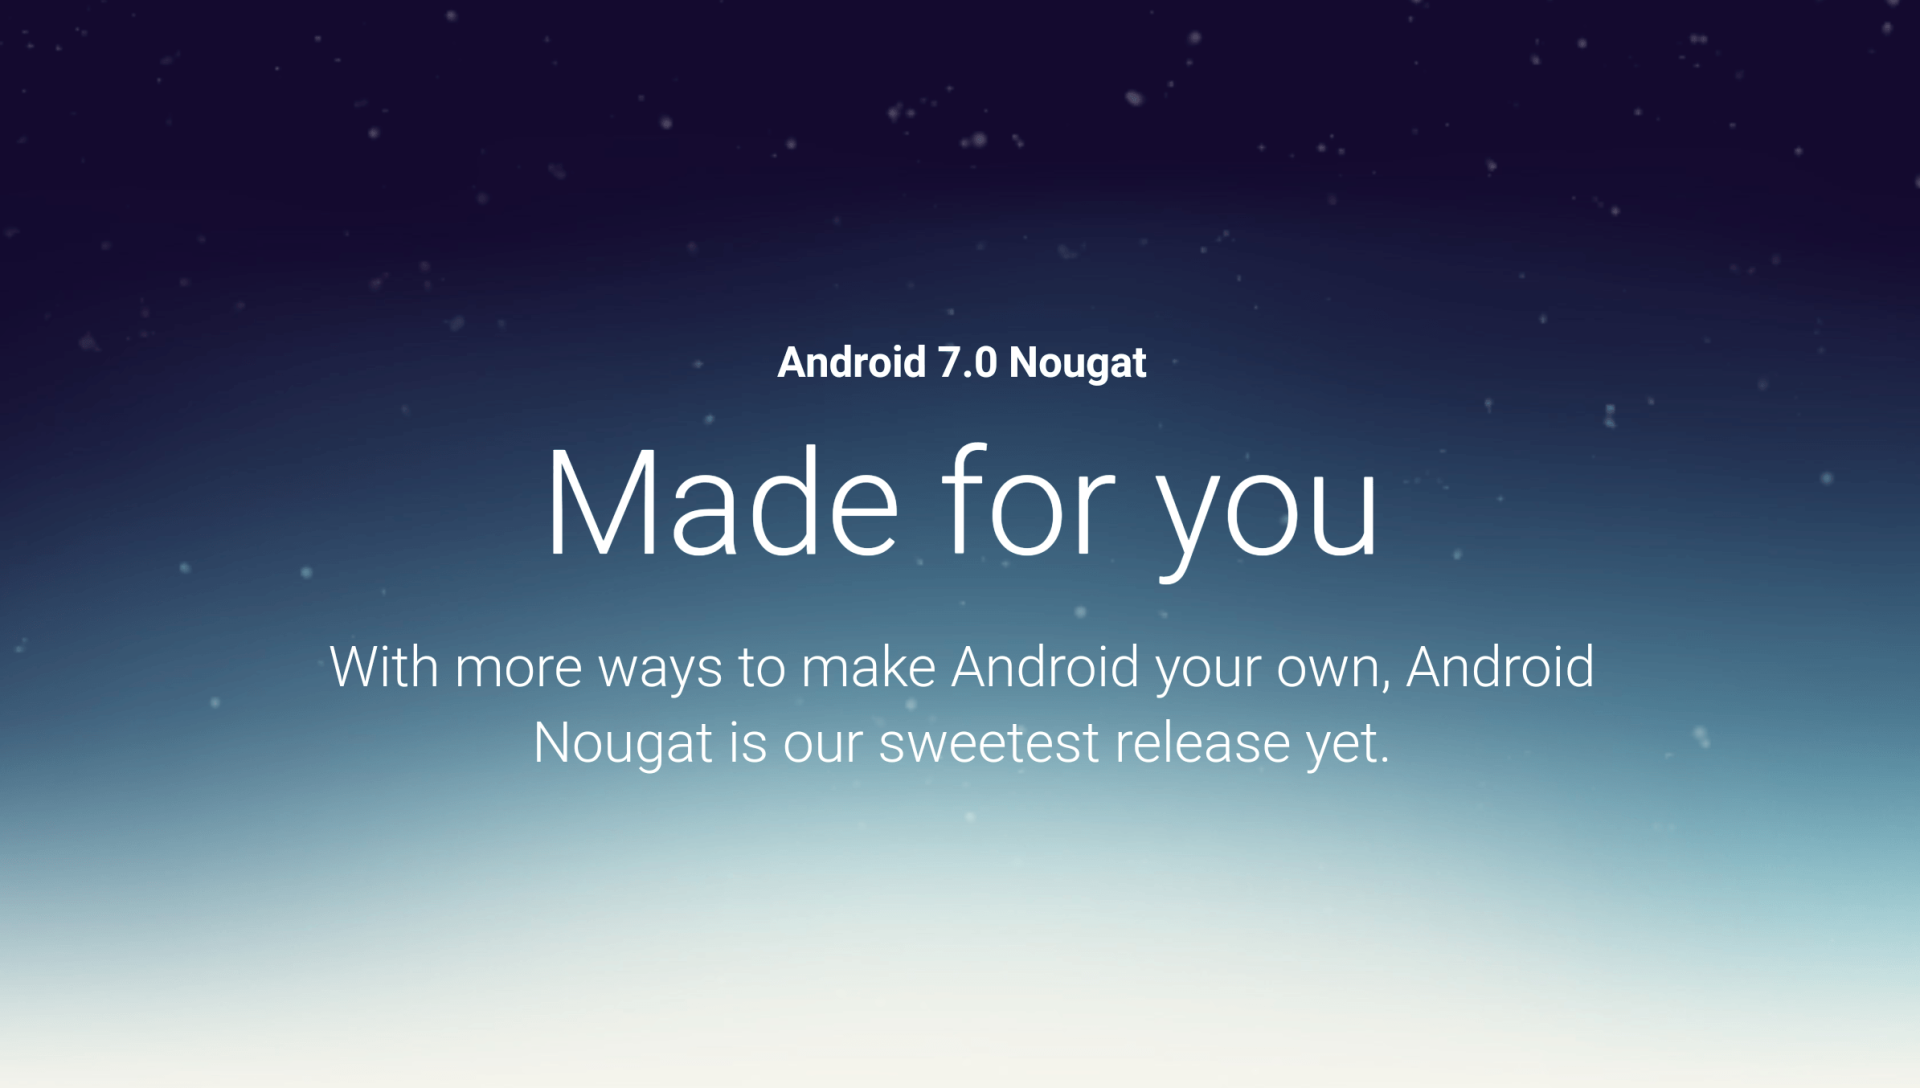 มันมาแล้ว! Google เริ่มปล่อย Android 7.0 Nougat ออกมาให้ผู้ใช้งานทั่วไปใช้งานได้แล้ว